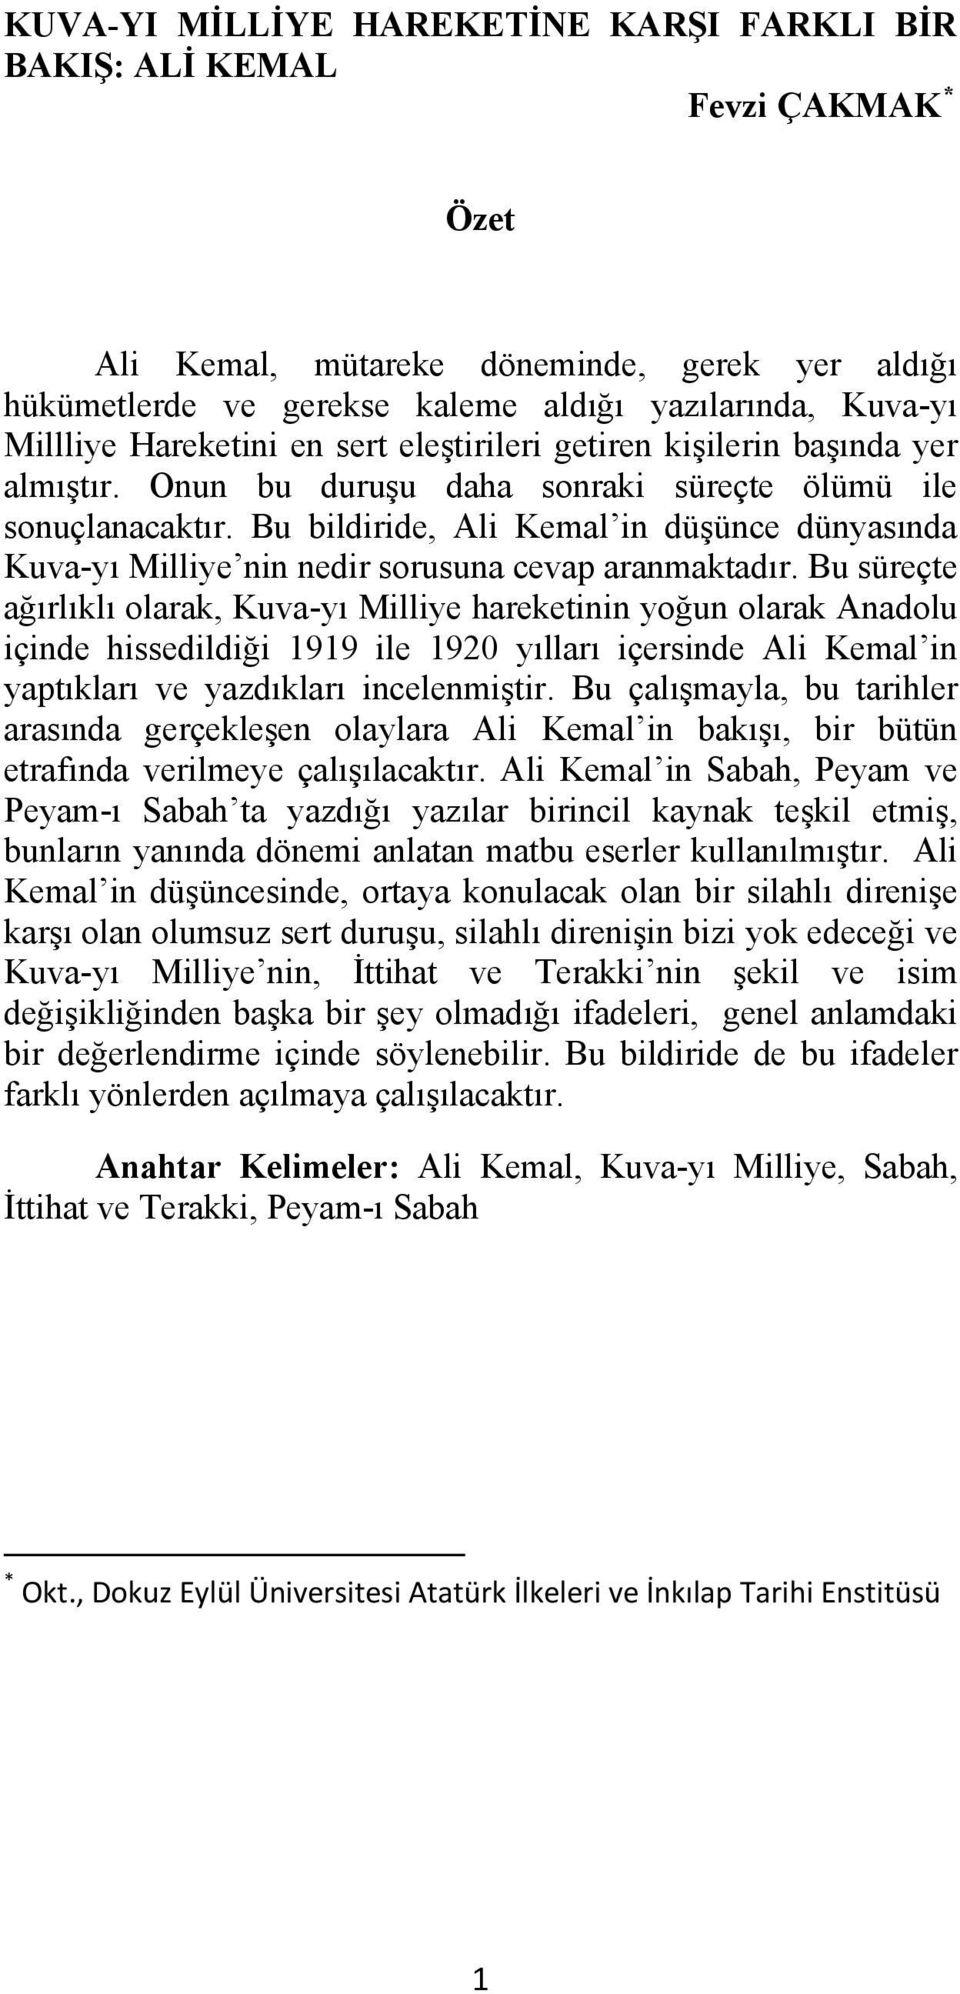 Bu bildiride, Ali Kemal in düşünce dünyasında Kuva-yı Milliye nin nedir sorusuna cevap aranmaktadır.